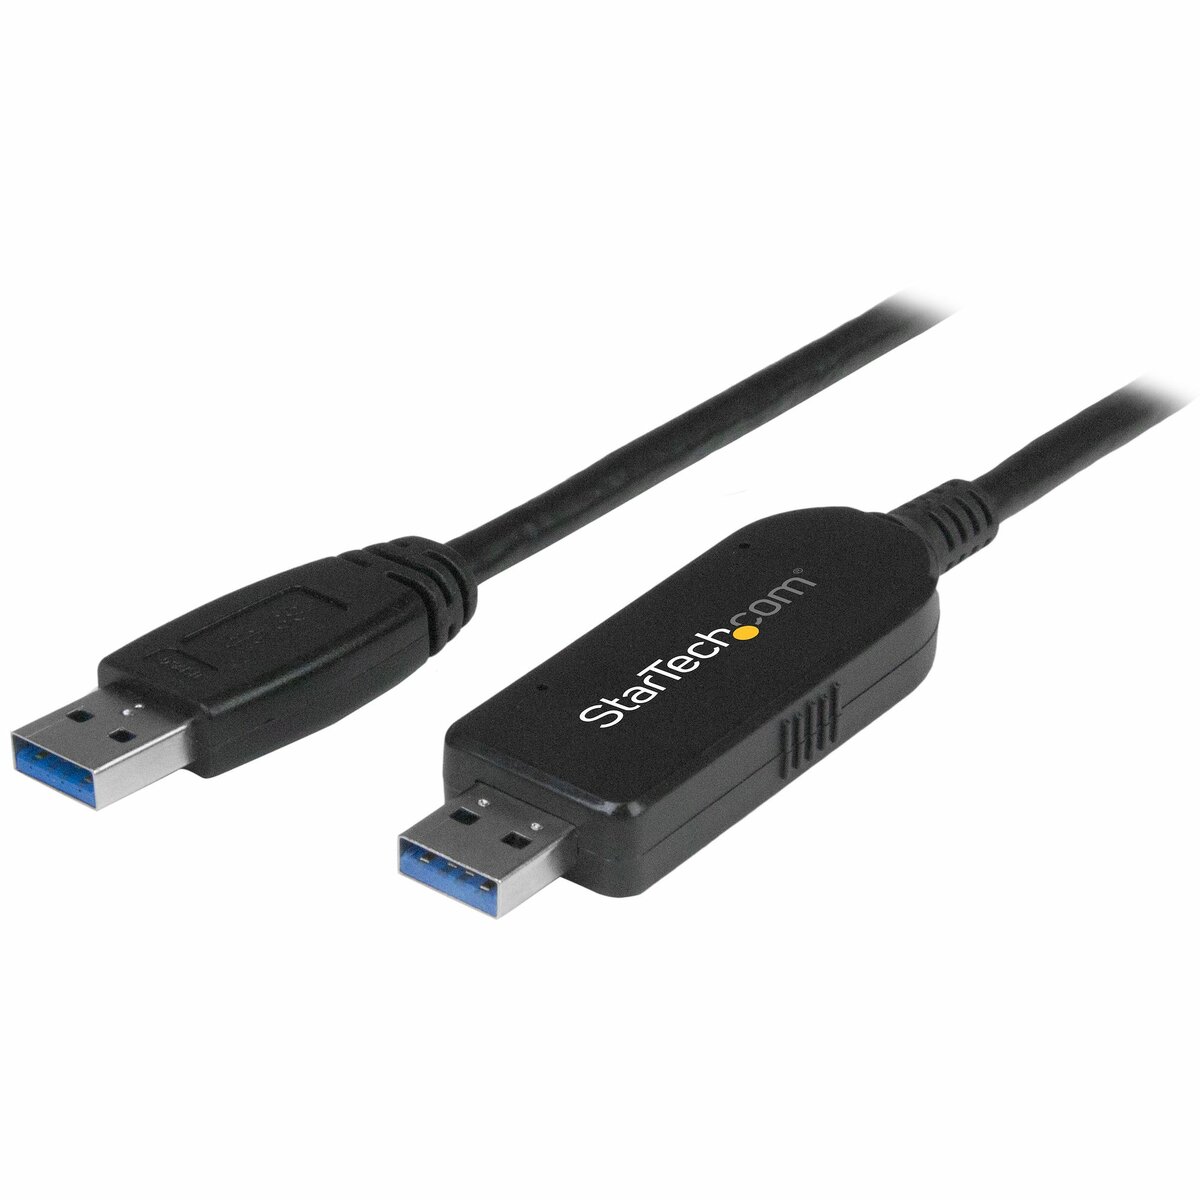 Acheter en ligne APPLE Adaptateur ( USB 3.0 de type A, USB 3.0 de